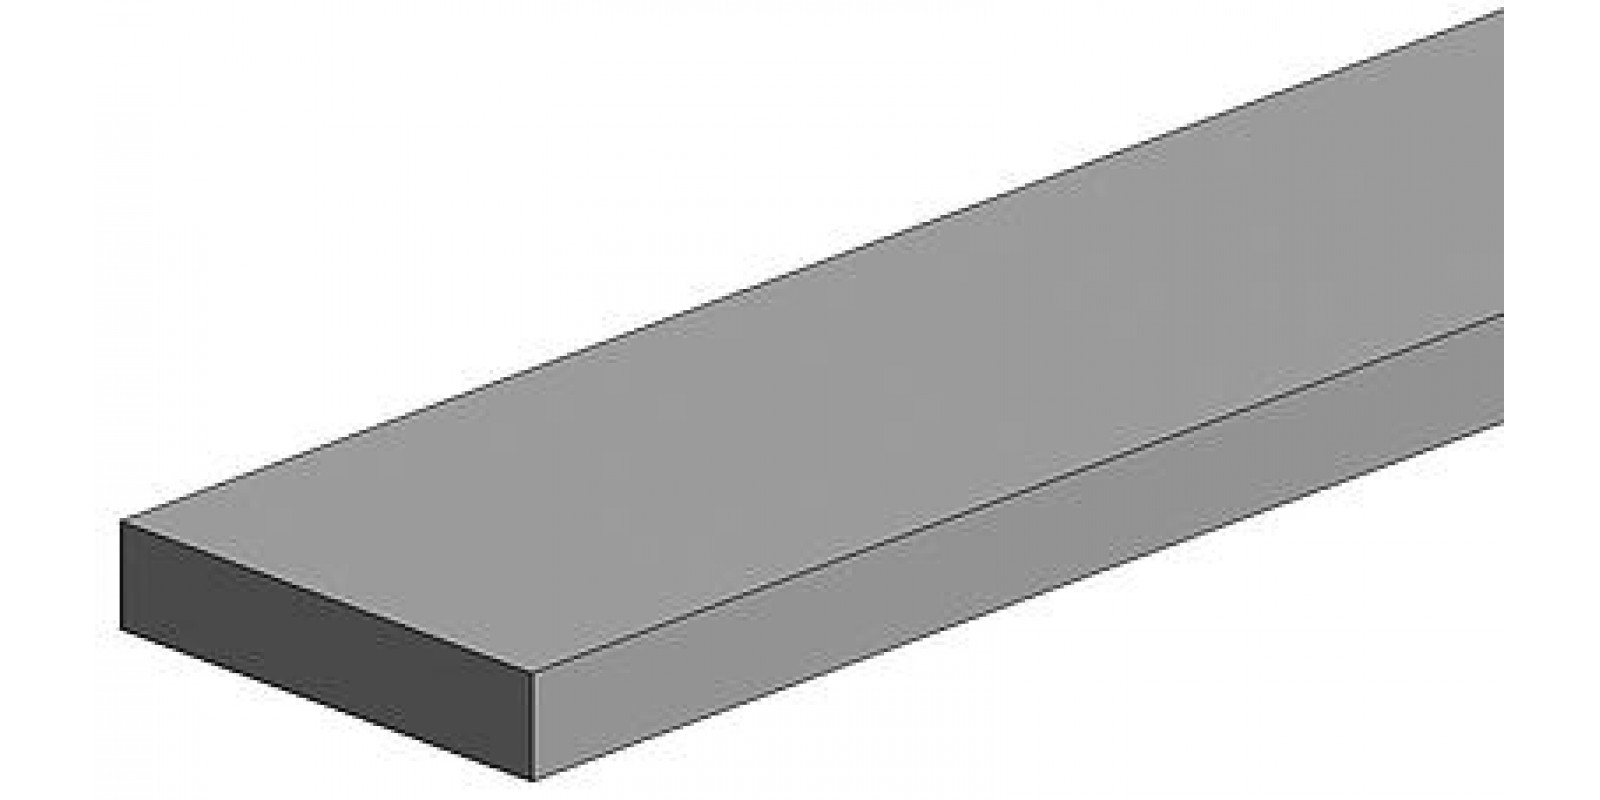 FA500121 White polystyrene square profile, 0.01